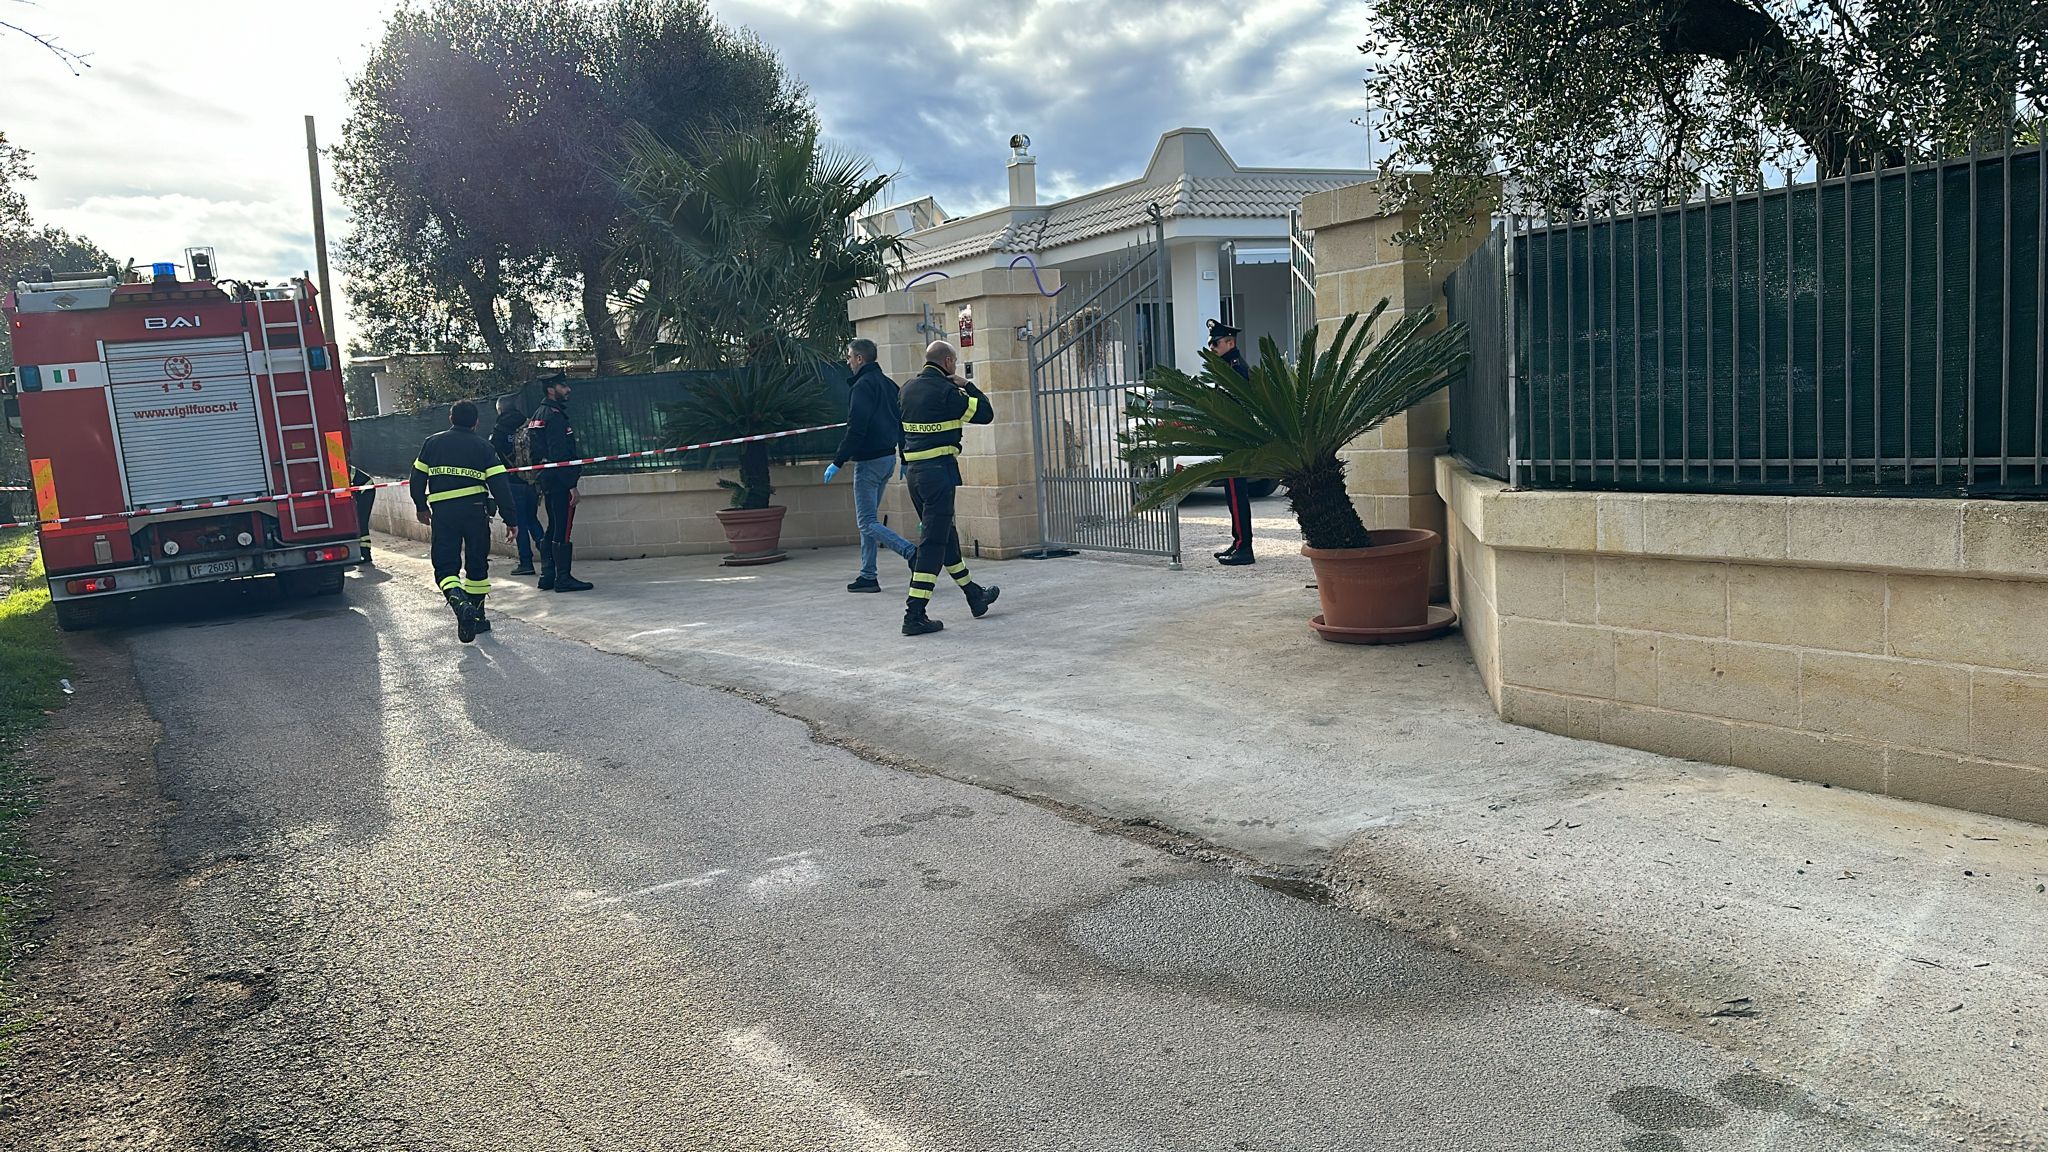 Omicidio-suicidio dopo una lite tra vicini di casa: è accaduto a Villa Castelli, l'uomo ha ucciso con un fucile